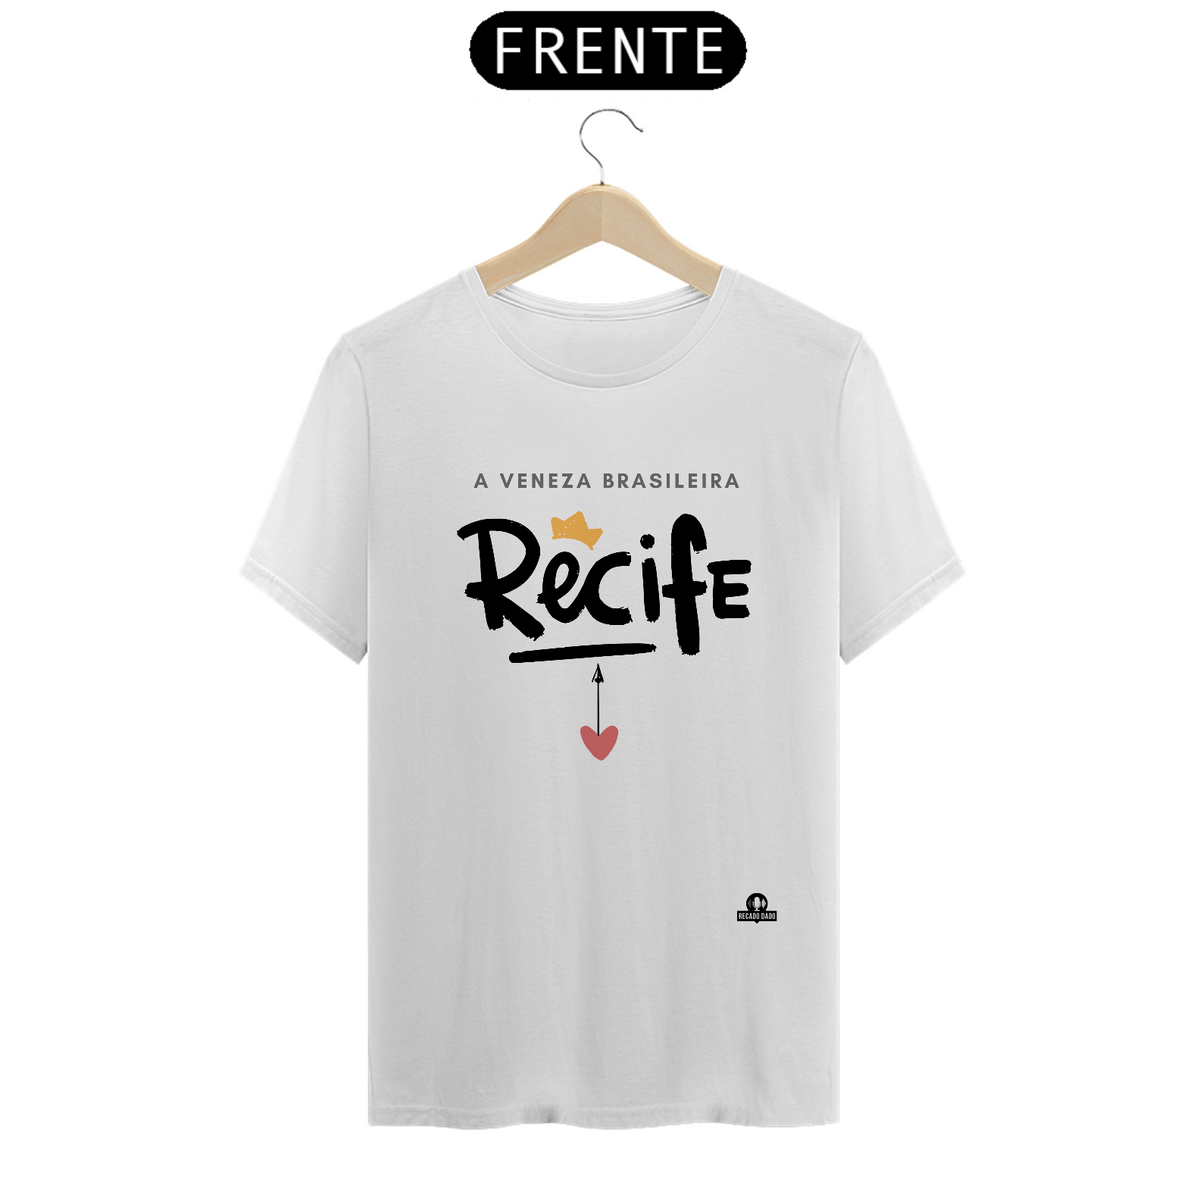 Nome do produto: Camiseta de Recife, a Veneza brasileira.